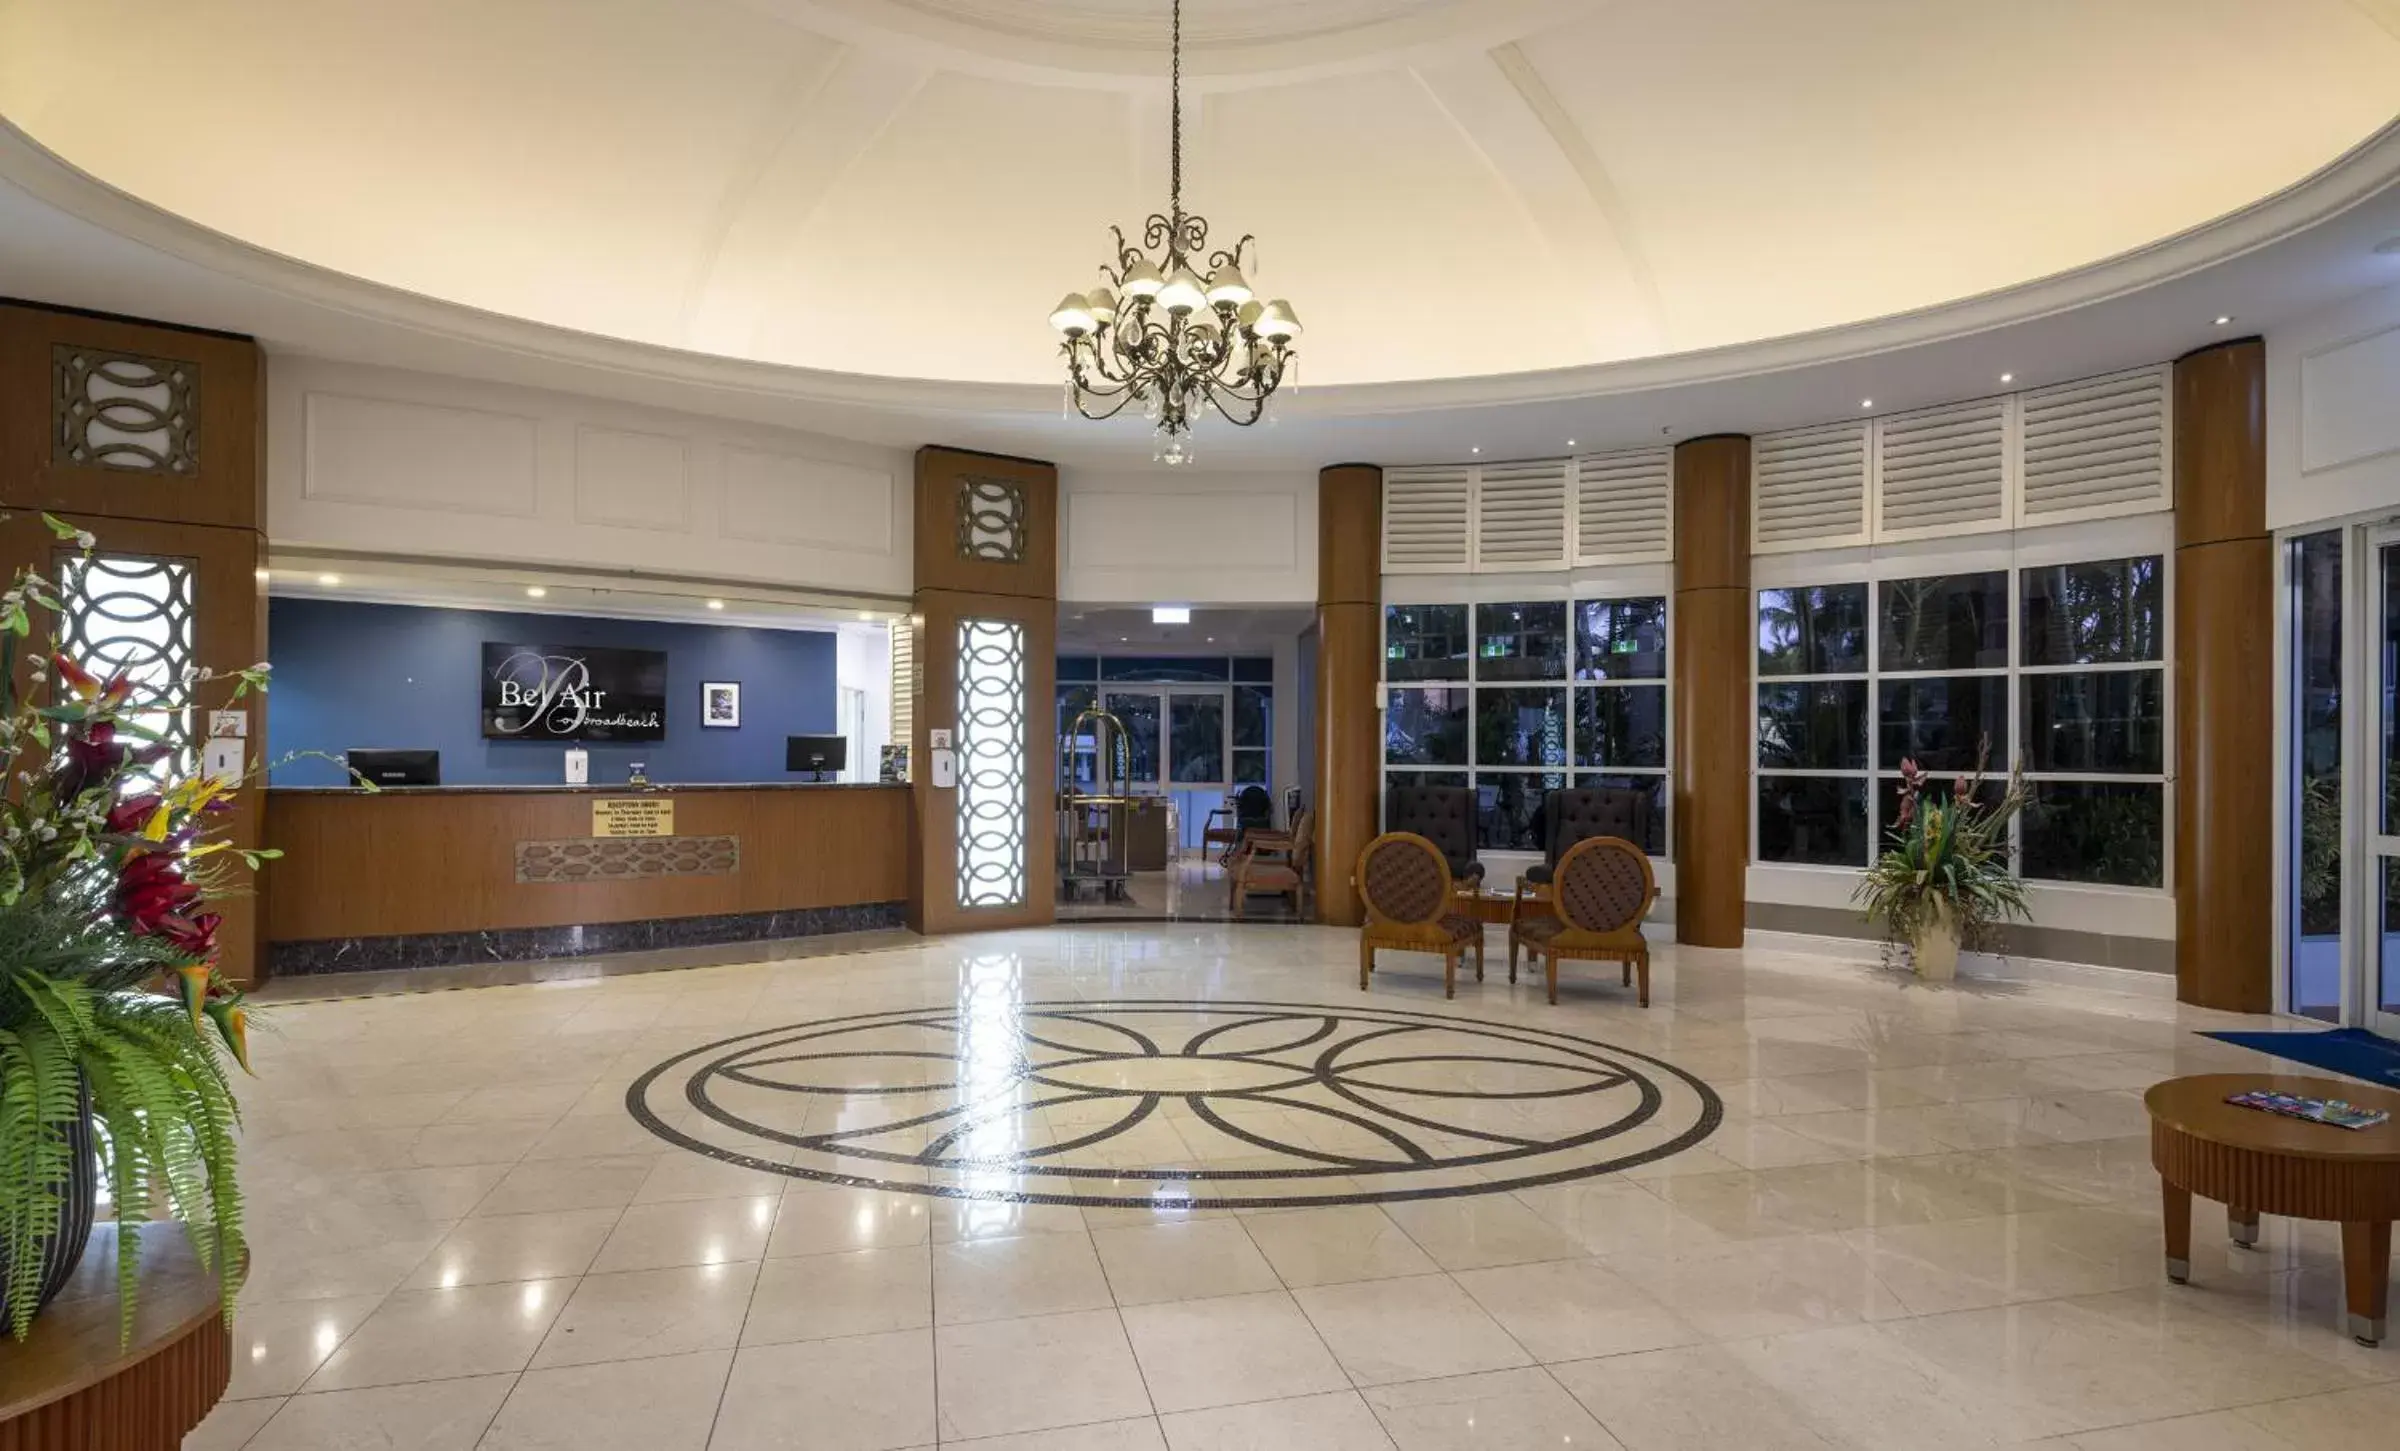 Lobby or reception, Lobby/Reception in Bel Air on Broadbeach